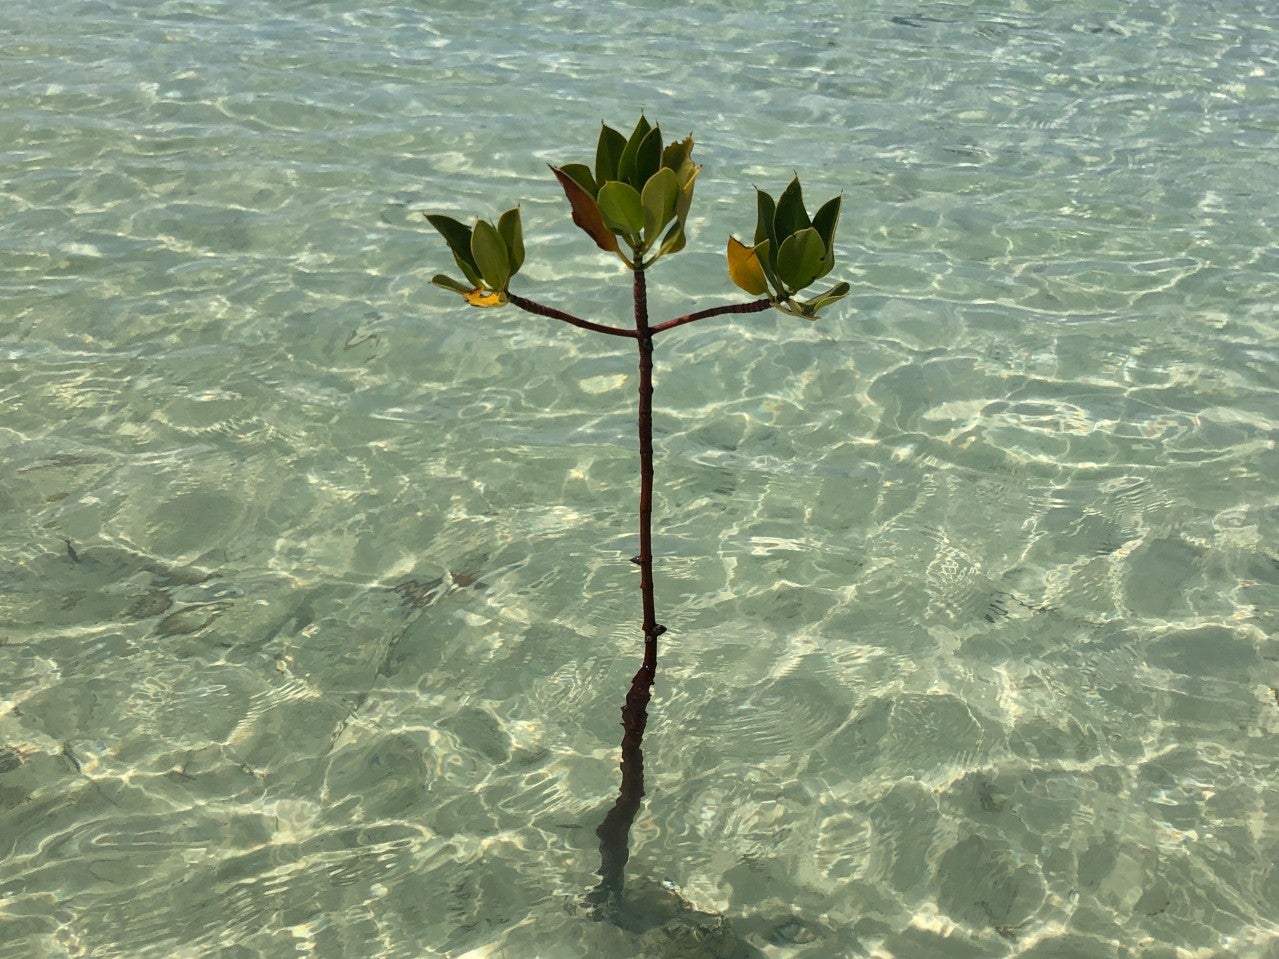 Red mangrove seedling grows in the waters of Saudi Arabia’s Red Sea